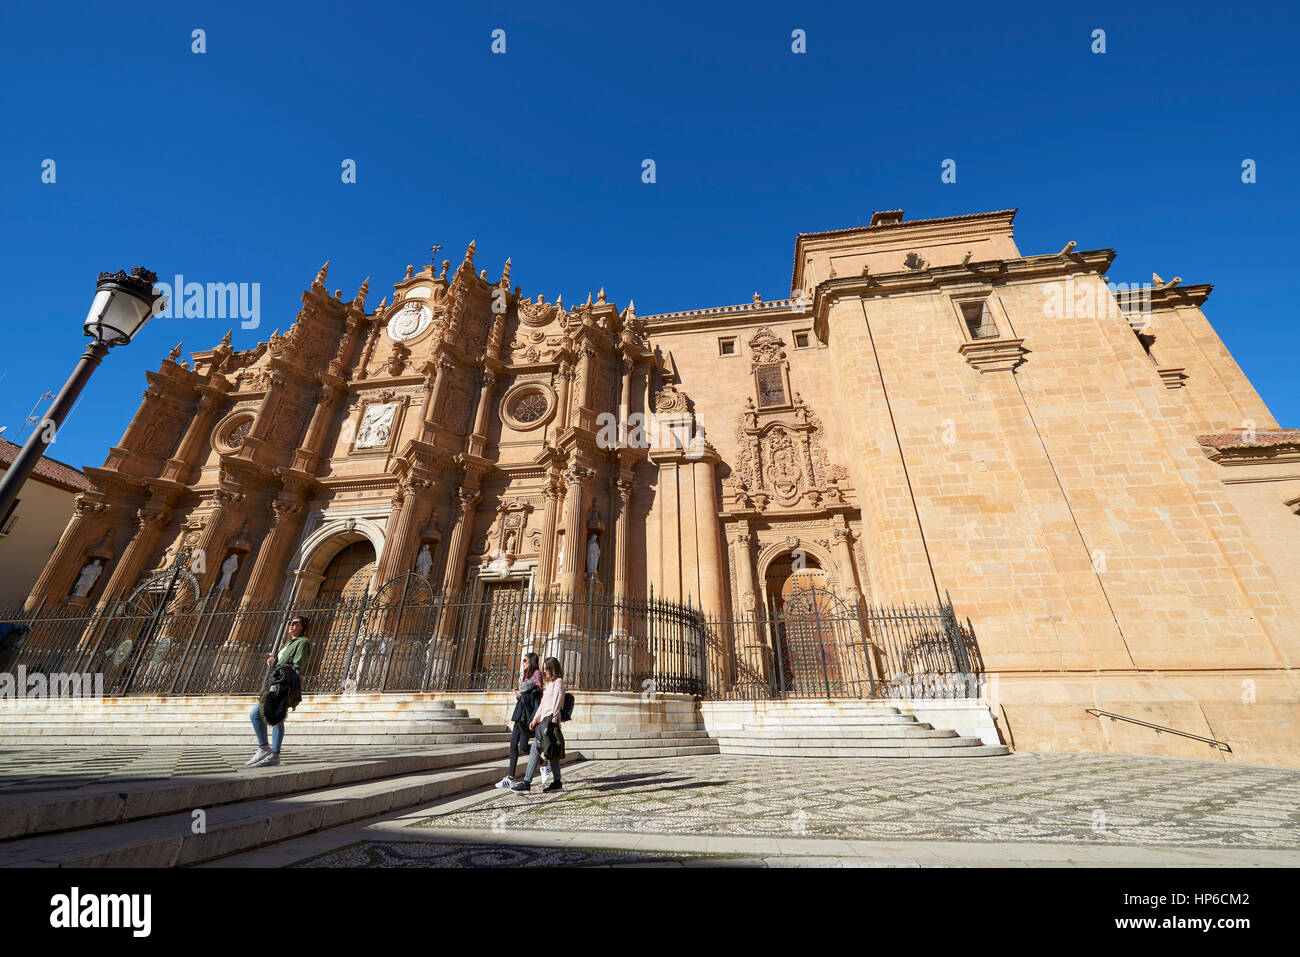 Catedral de Guadix (Cathedral of Guadix),  province of Granada, Granada, Andalusia, Spain, Europe Stock Photo